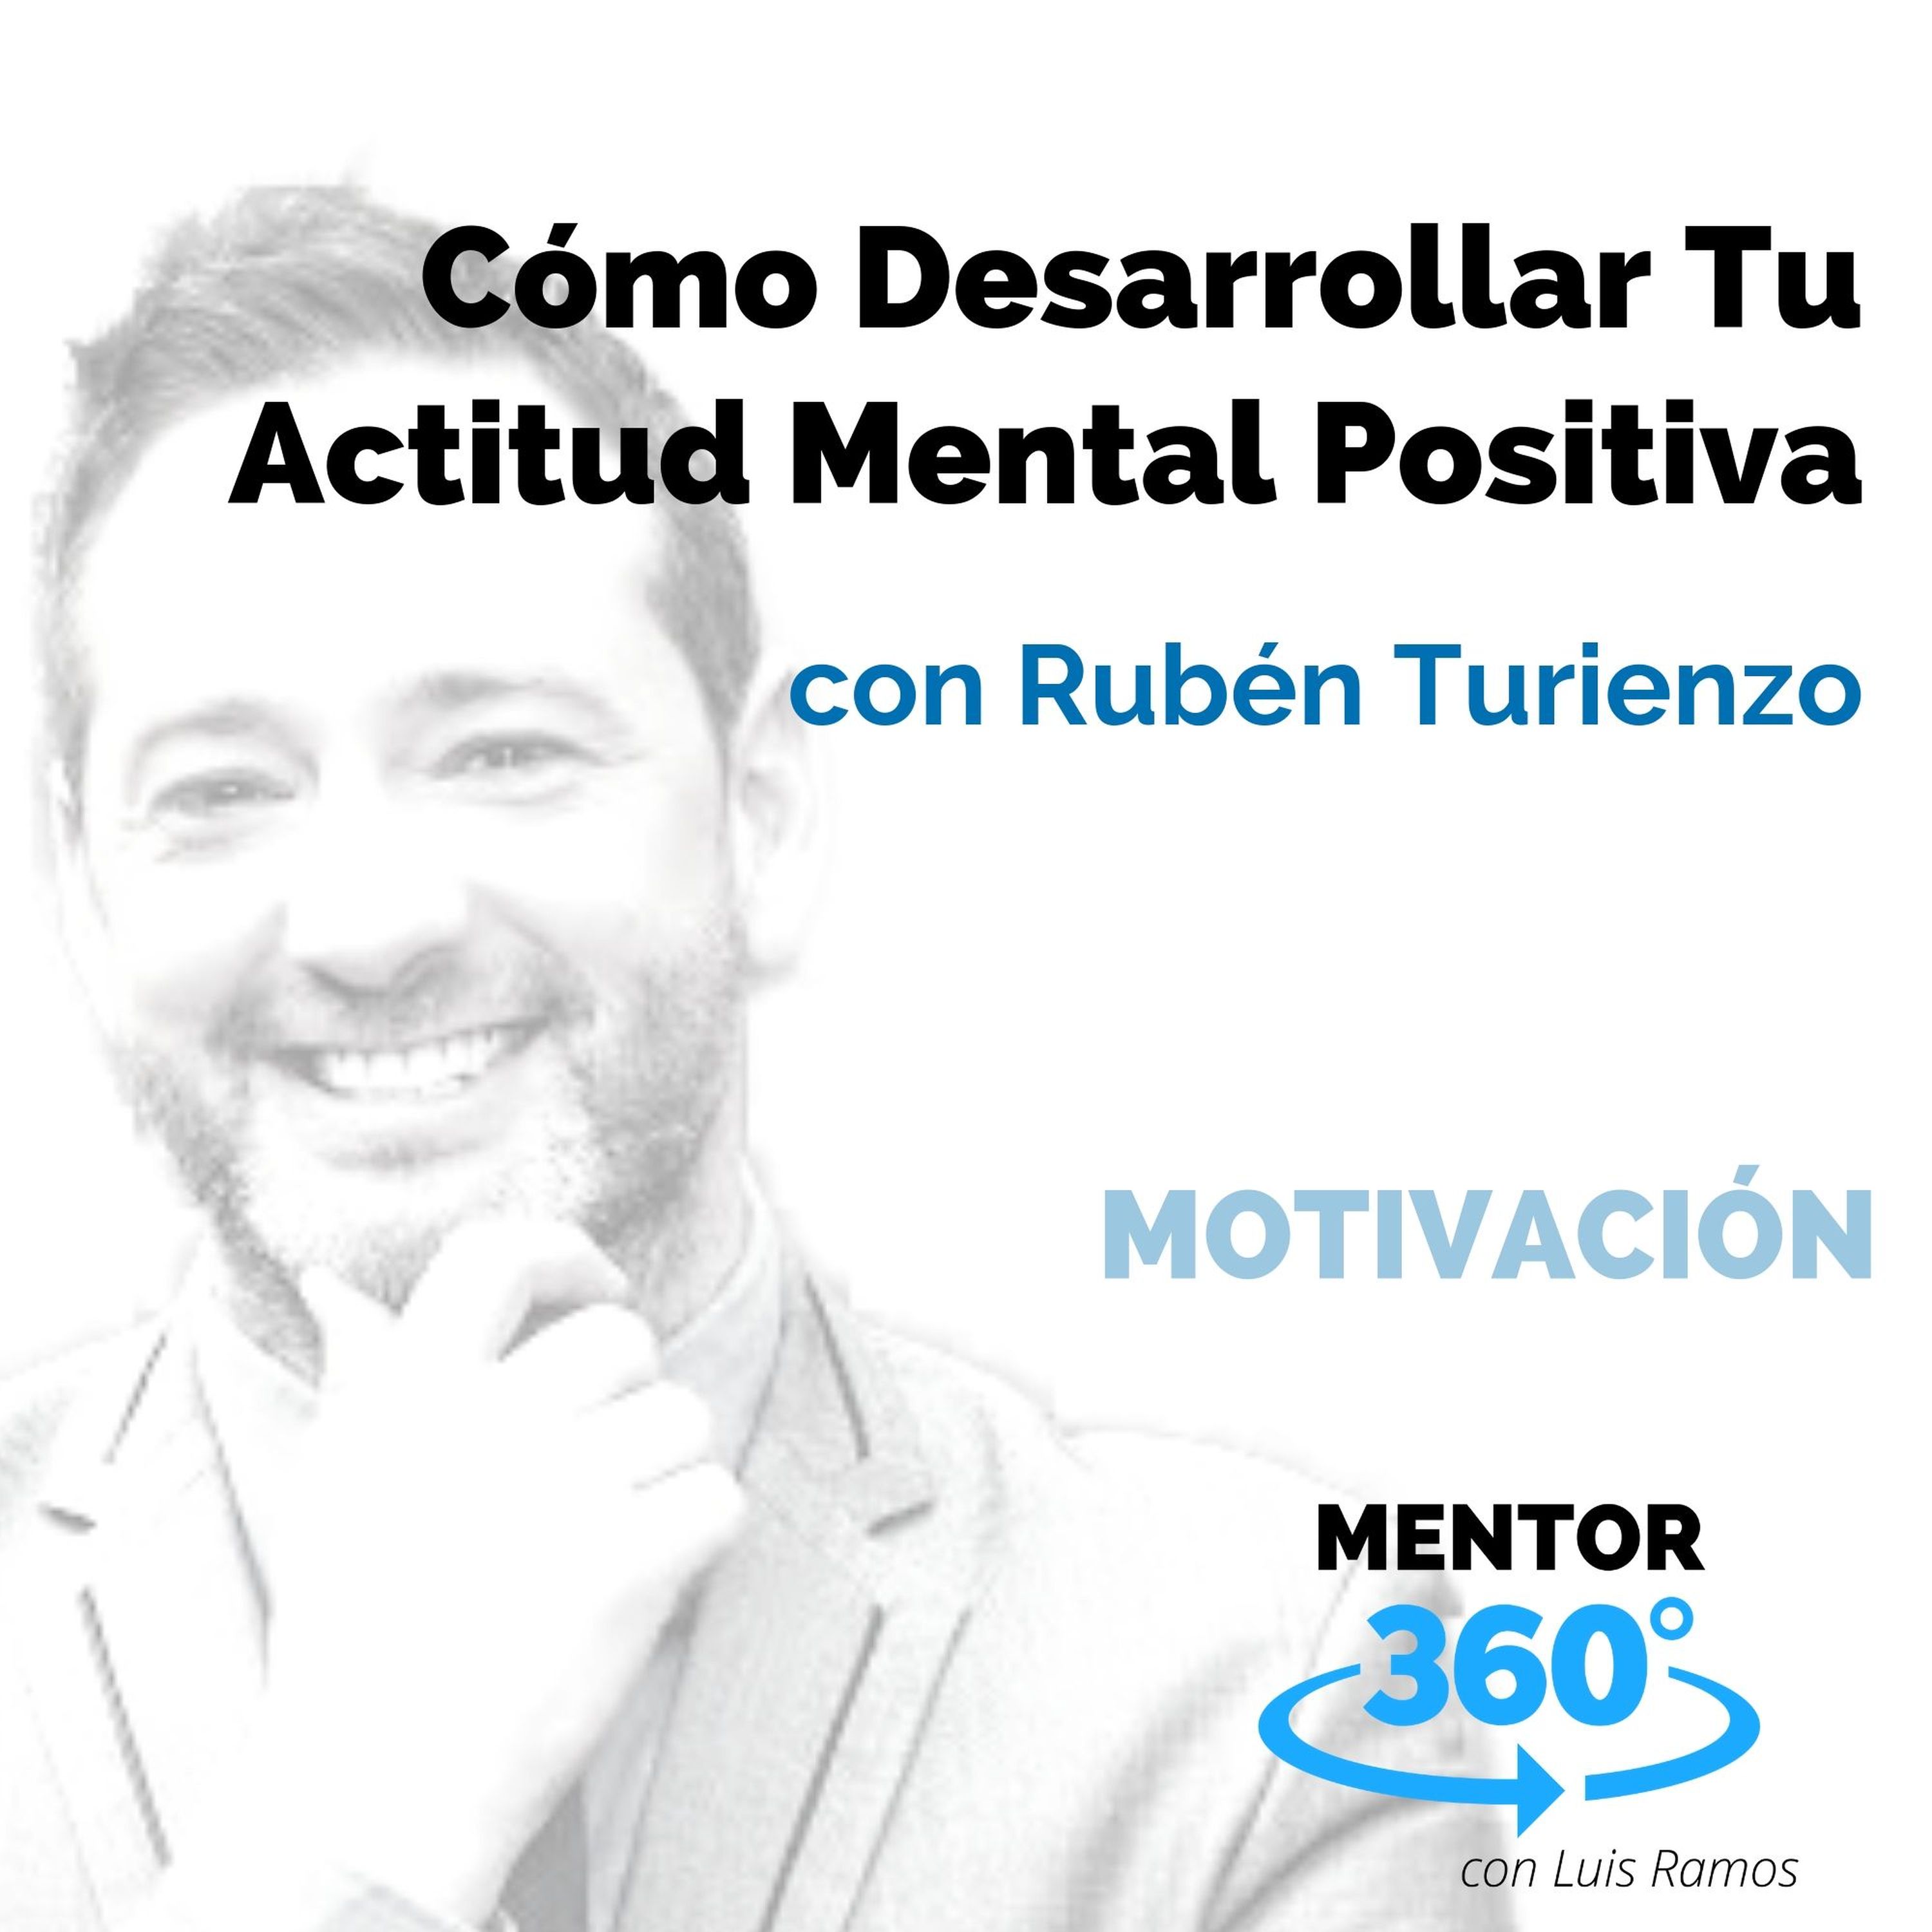 Cómo Desarrollar Tu Actitud Mental Positiva, con Rubén Turienzo - MOTIVACIÓN - MENTOR360